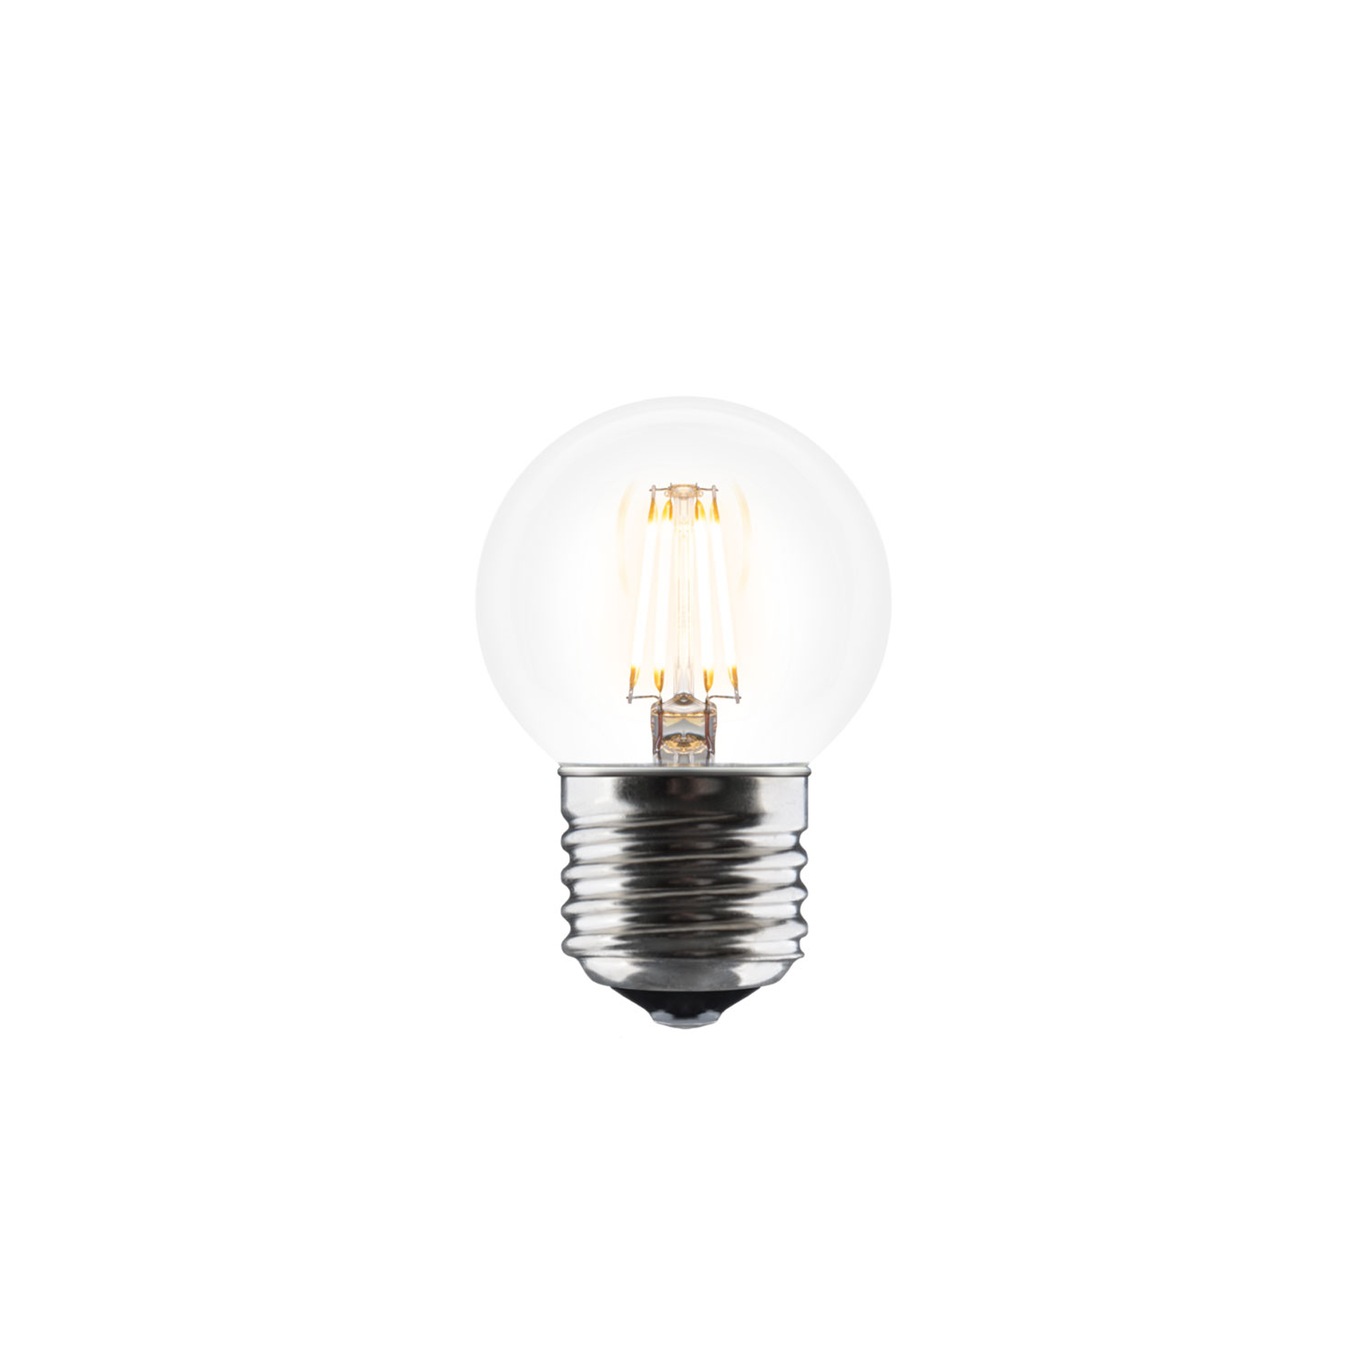 Idea Lyspære E27 LED 4W, 4 cm